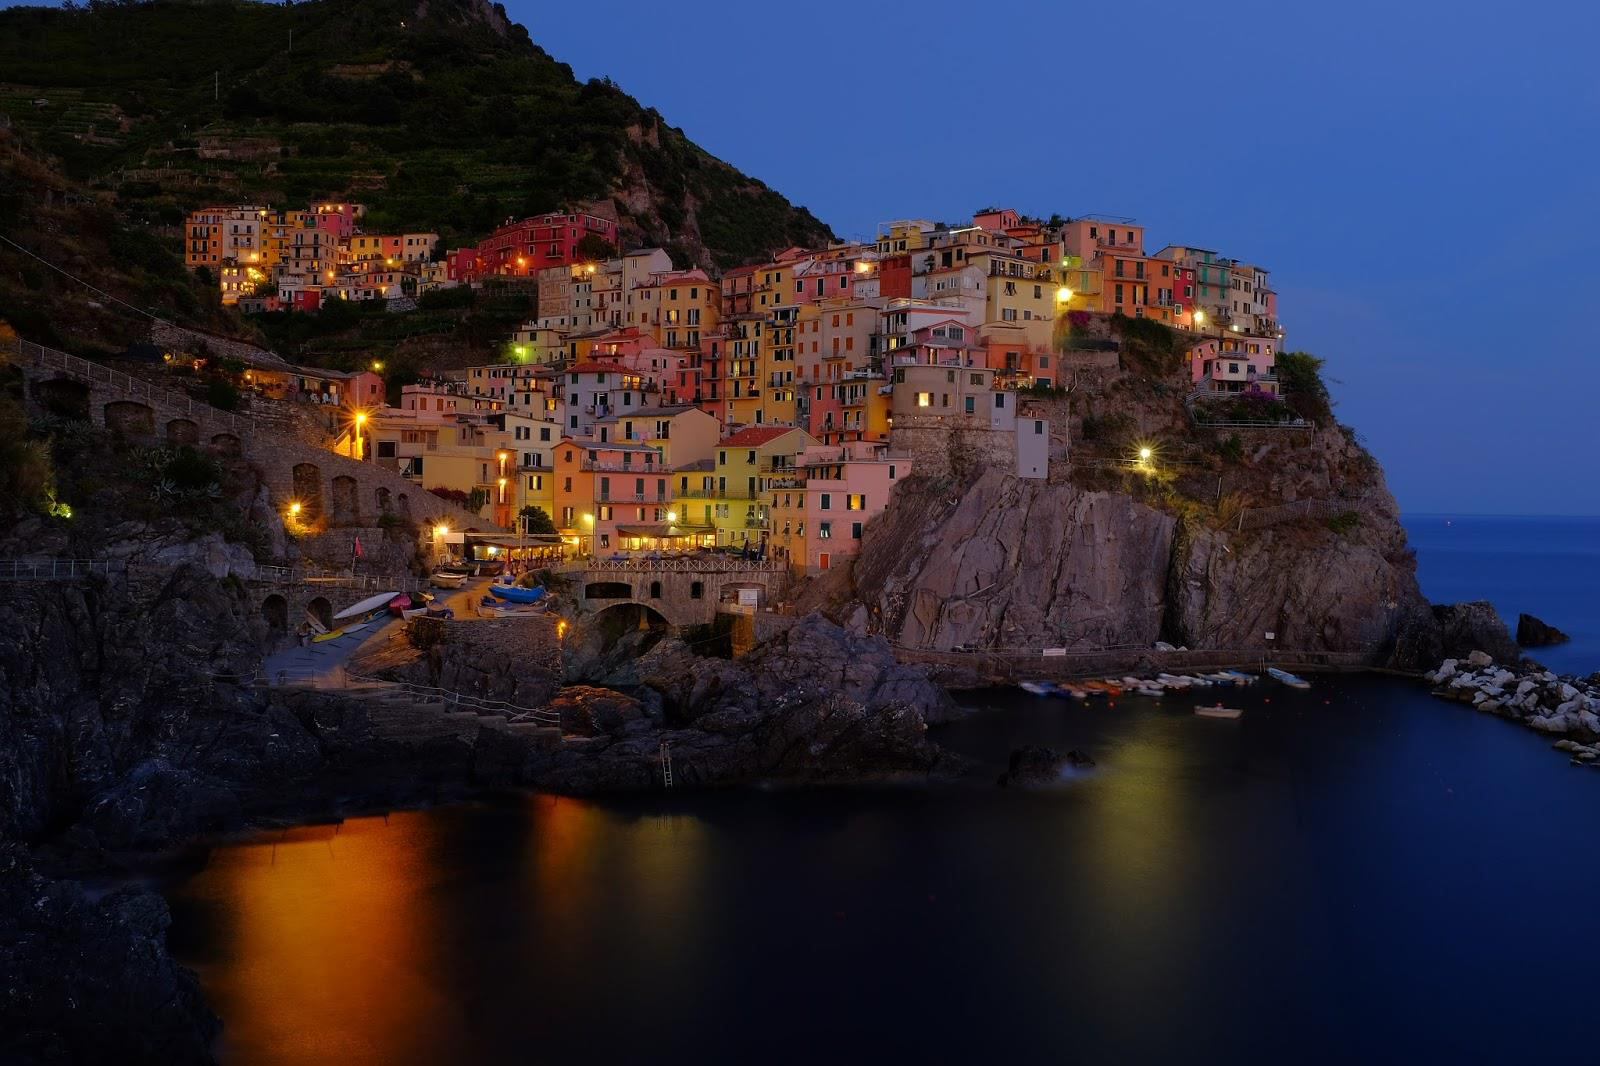 Night at Cinque Terre by Satsawat Visansirikul